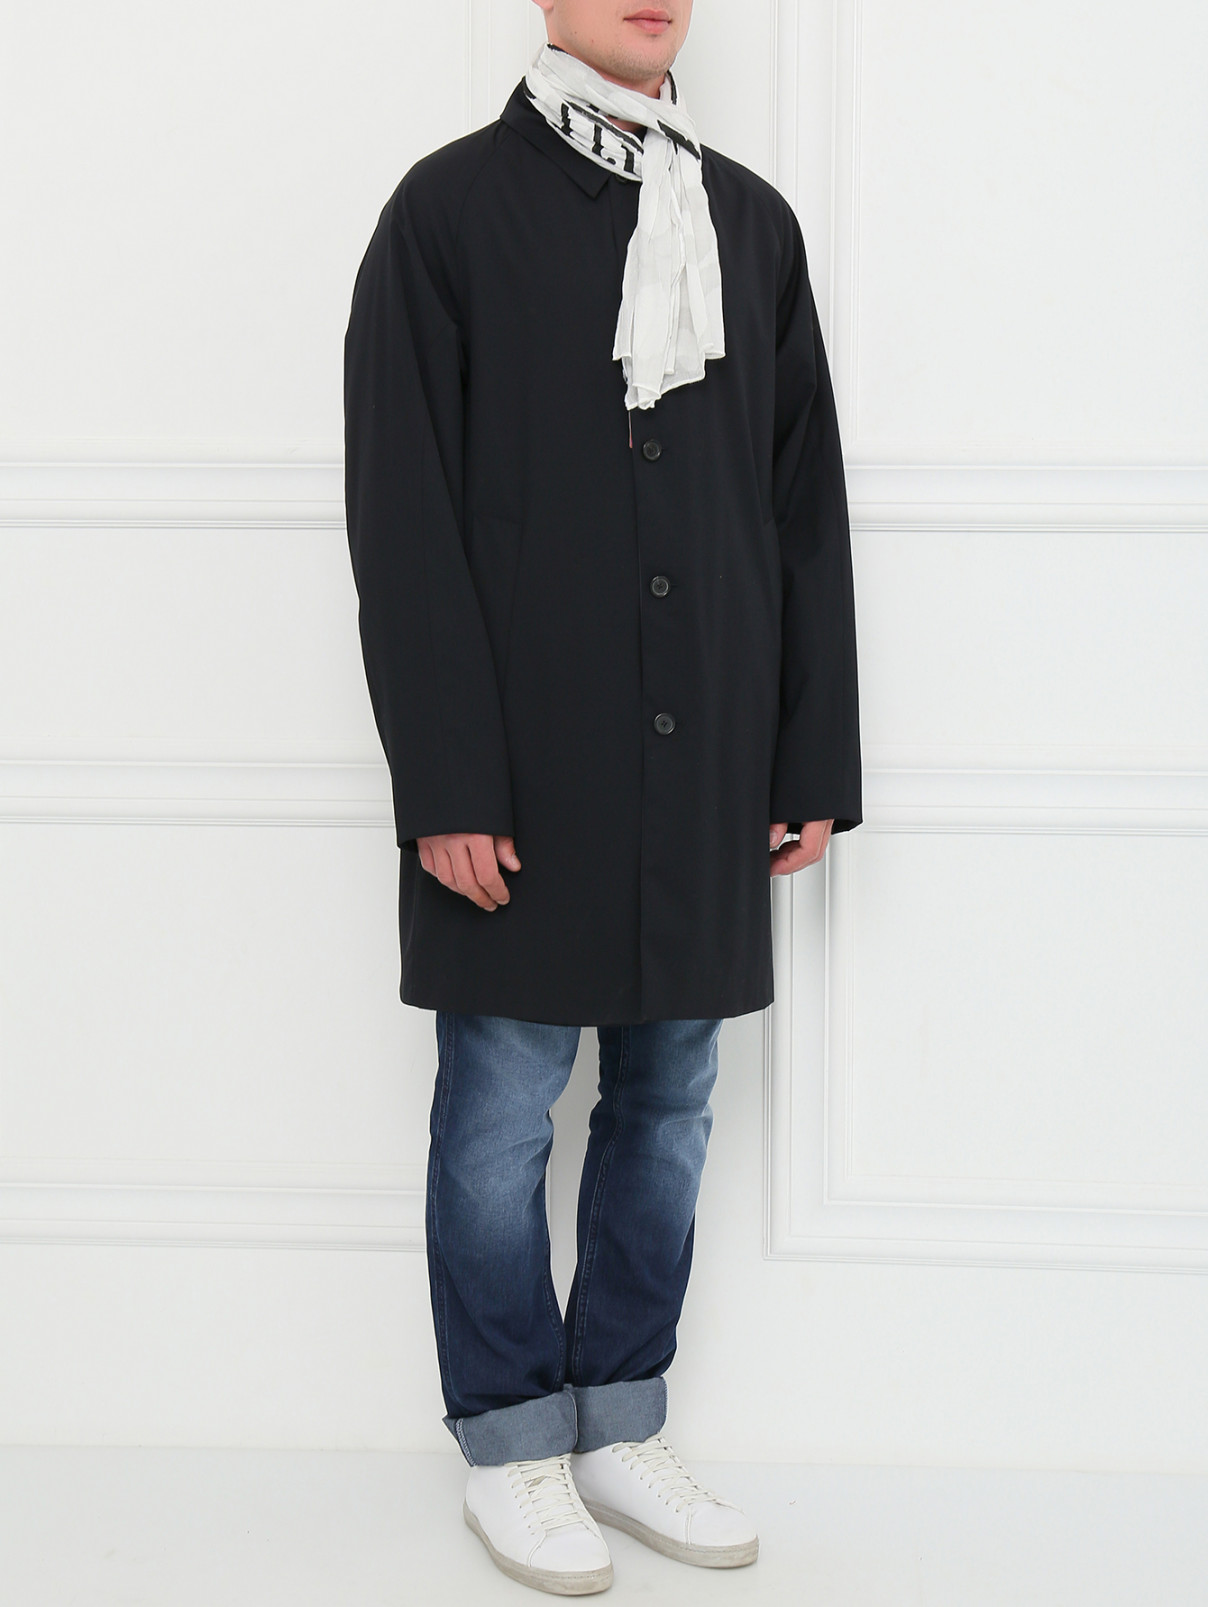 Шарф из хлопка Armani Jeans  –  Модель Общий вид  – Цвет:  Белый